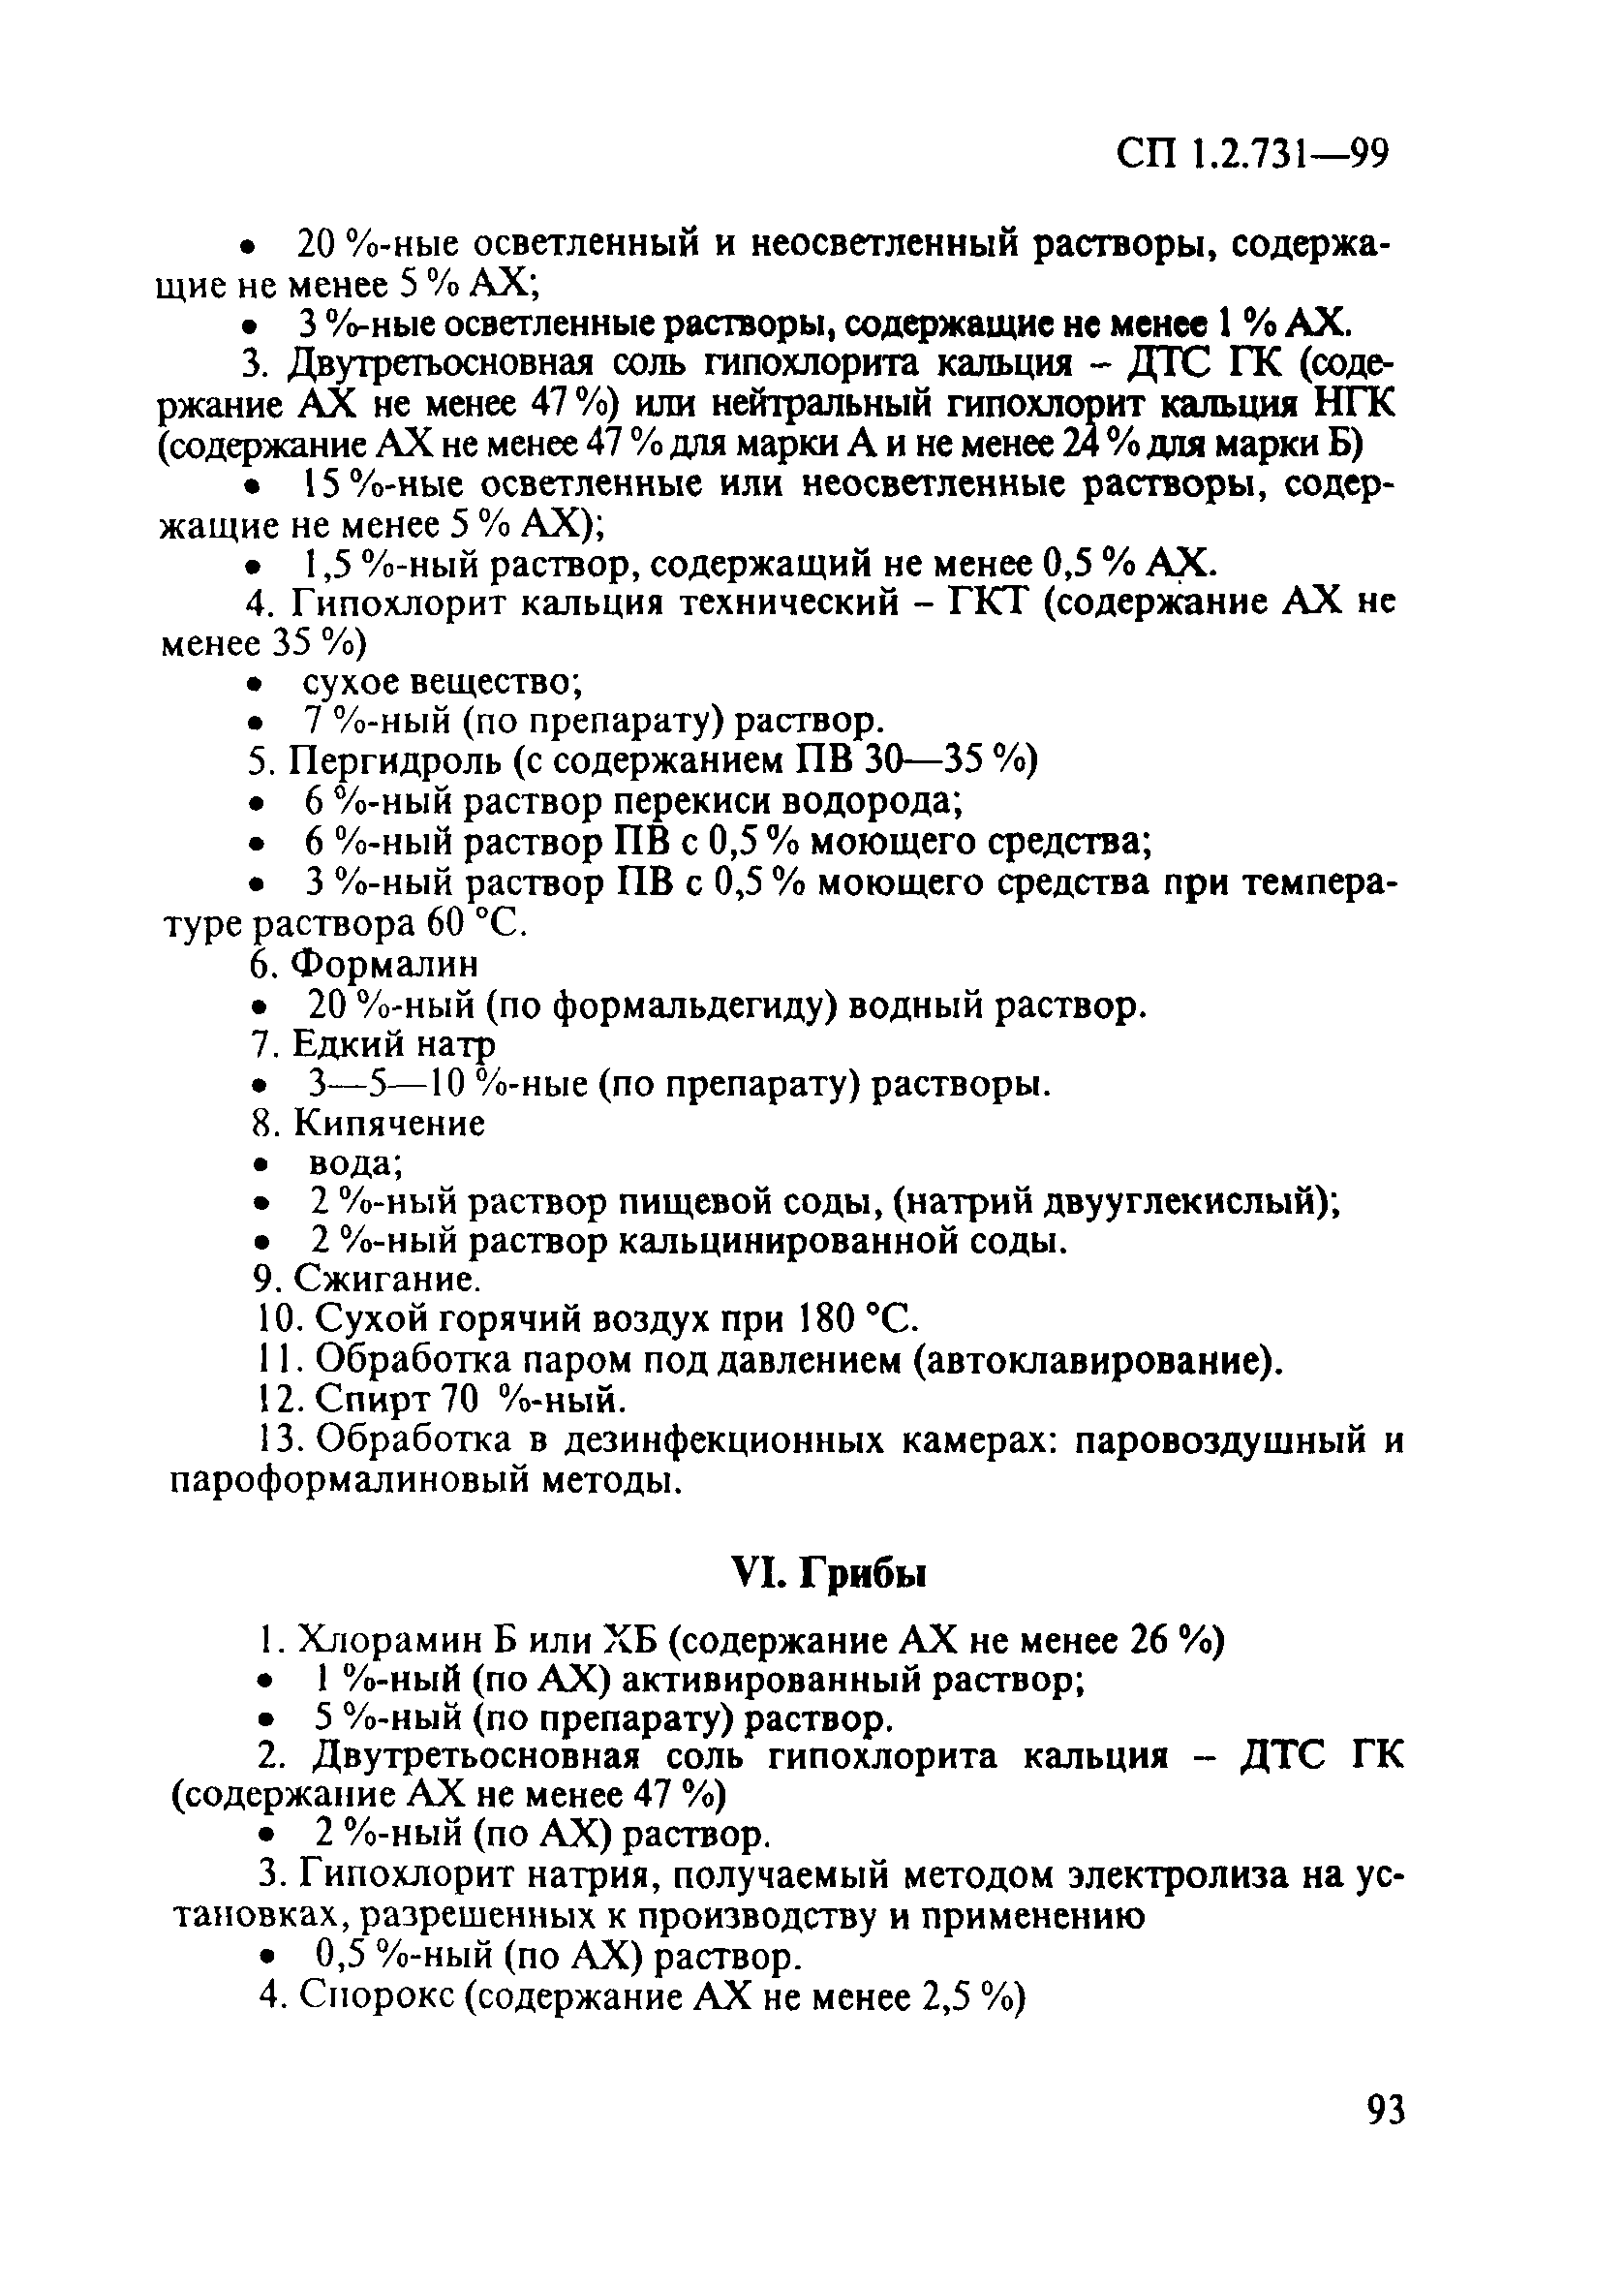 СП 1.2.731-99